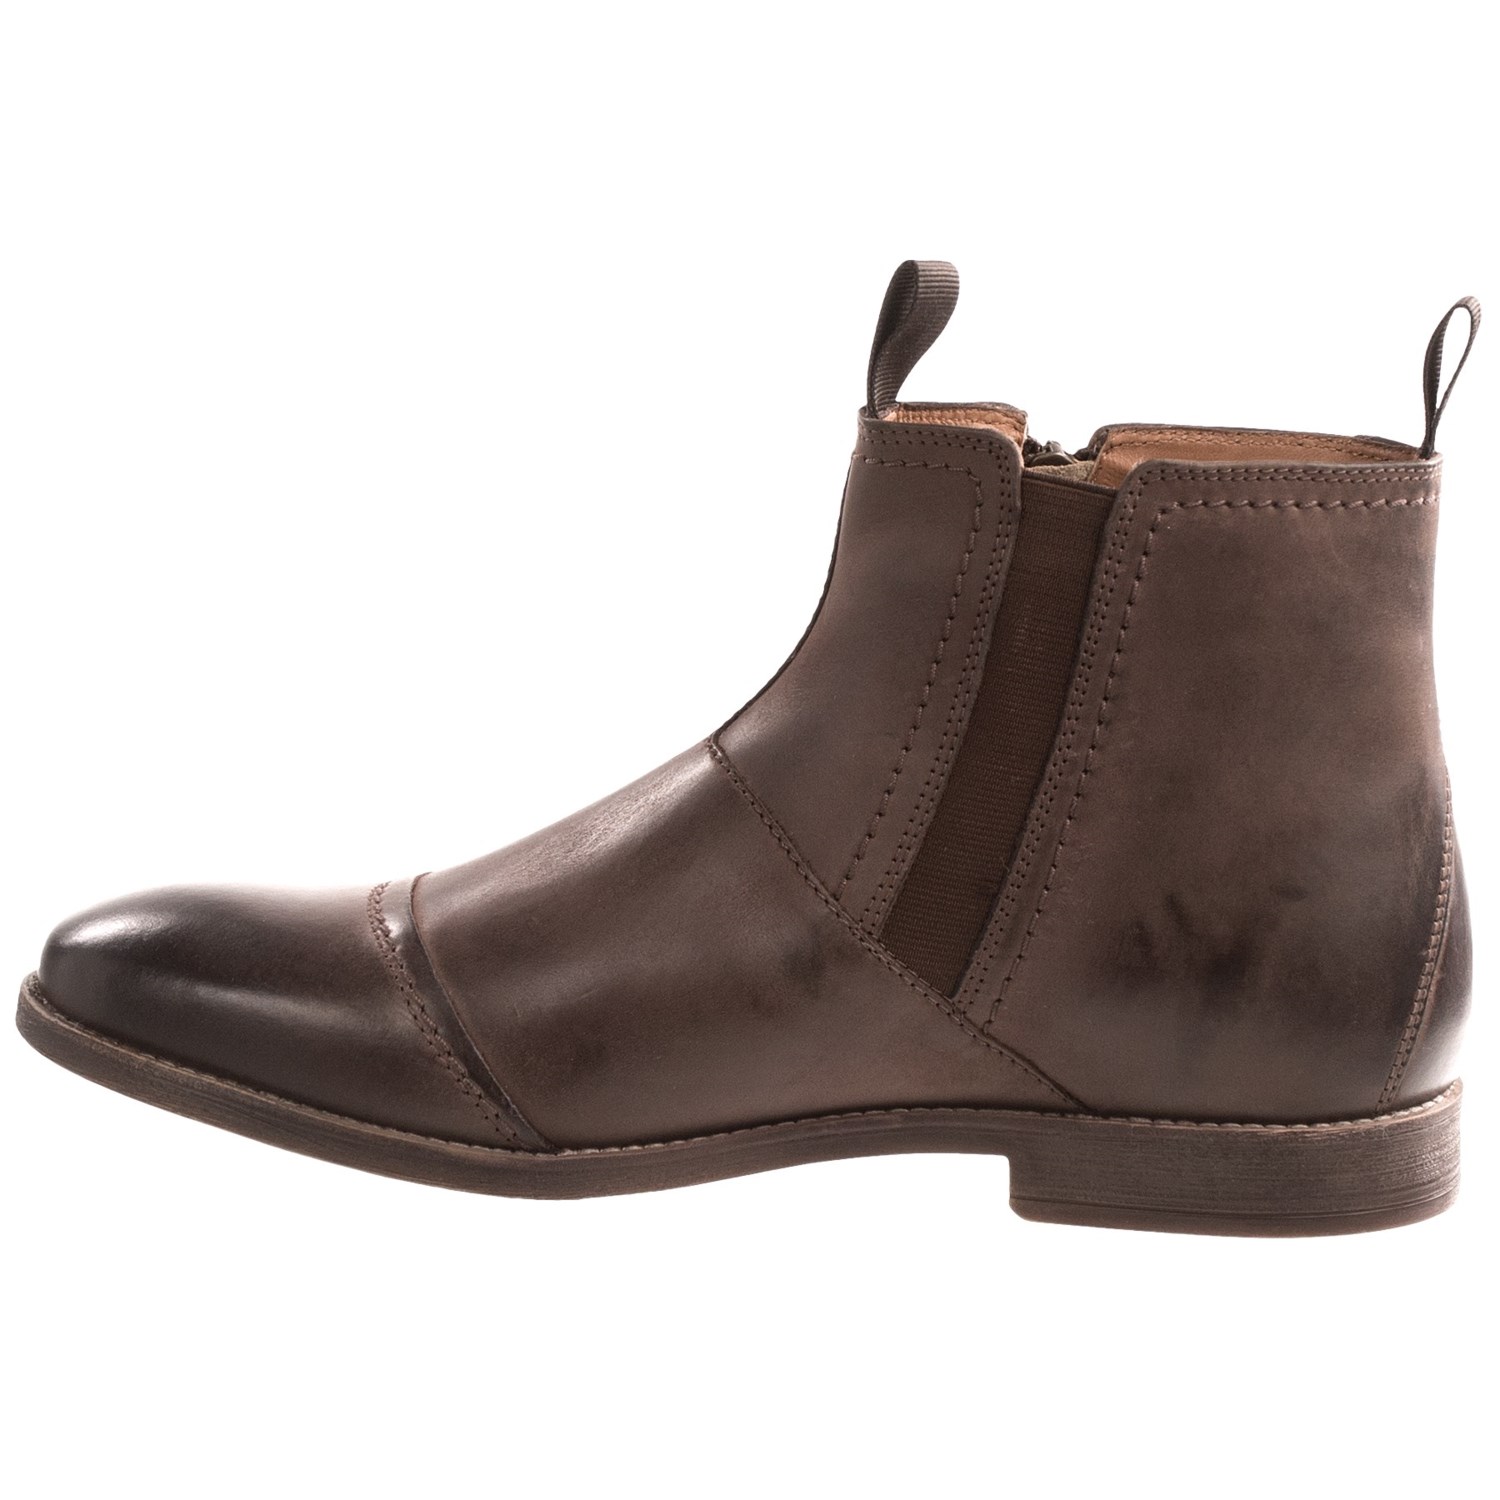 Clarks Novato Leather Boots (For Men) 8658V - Save 34%